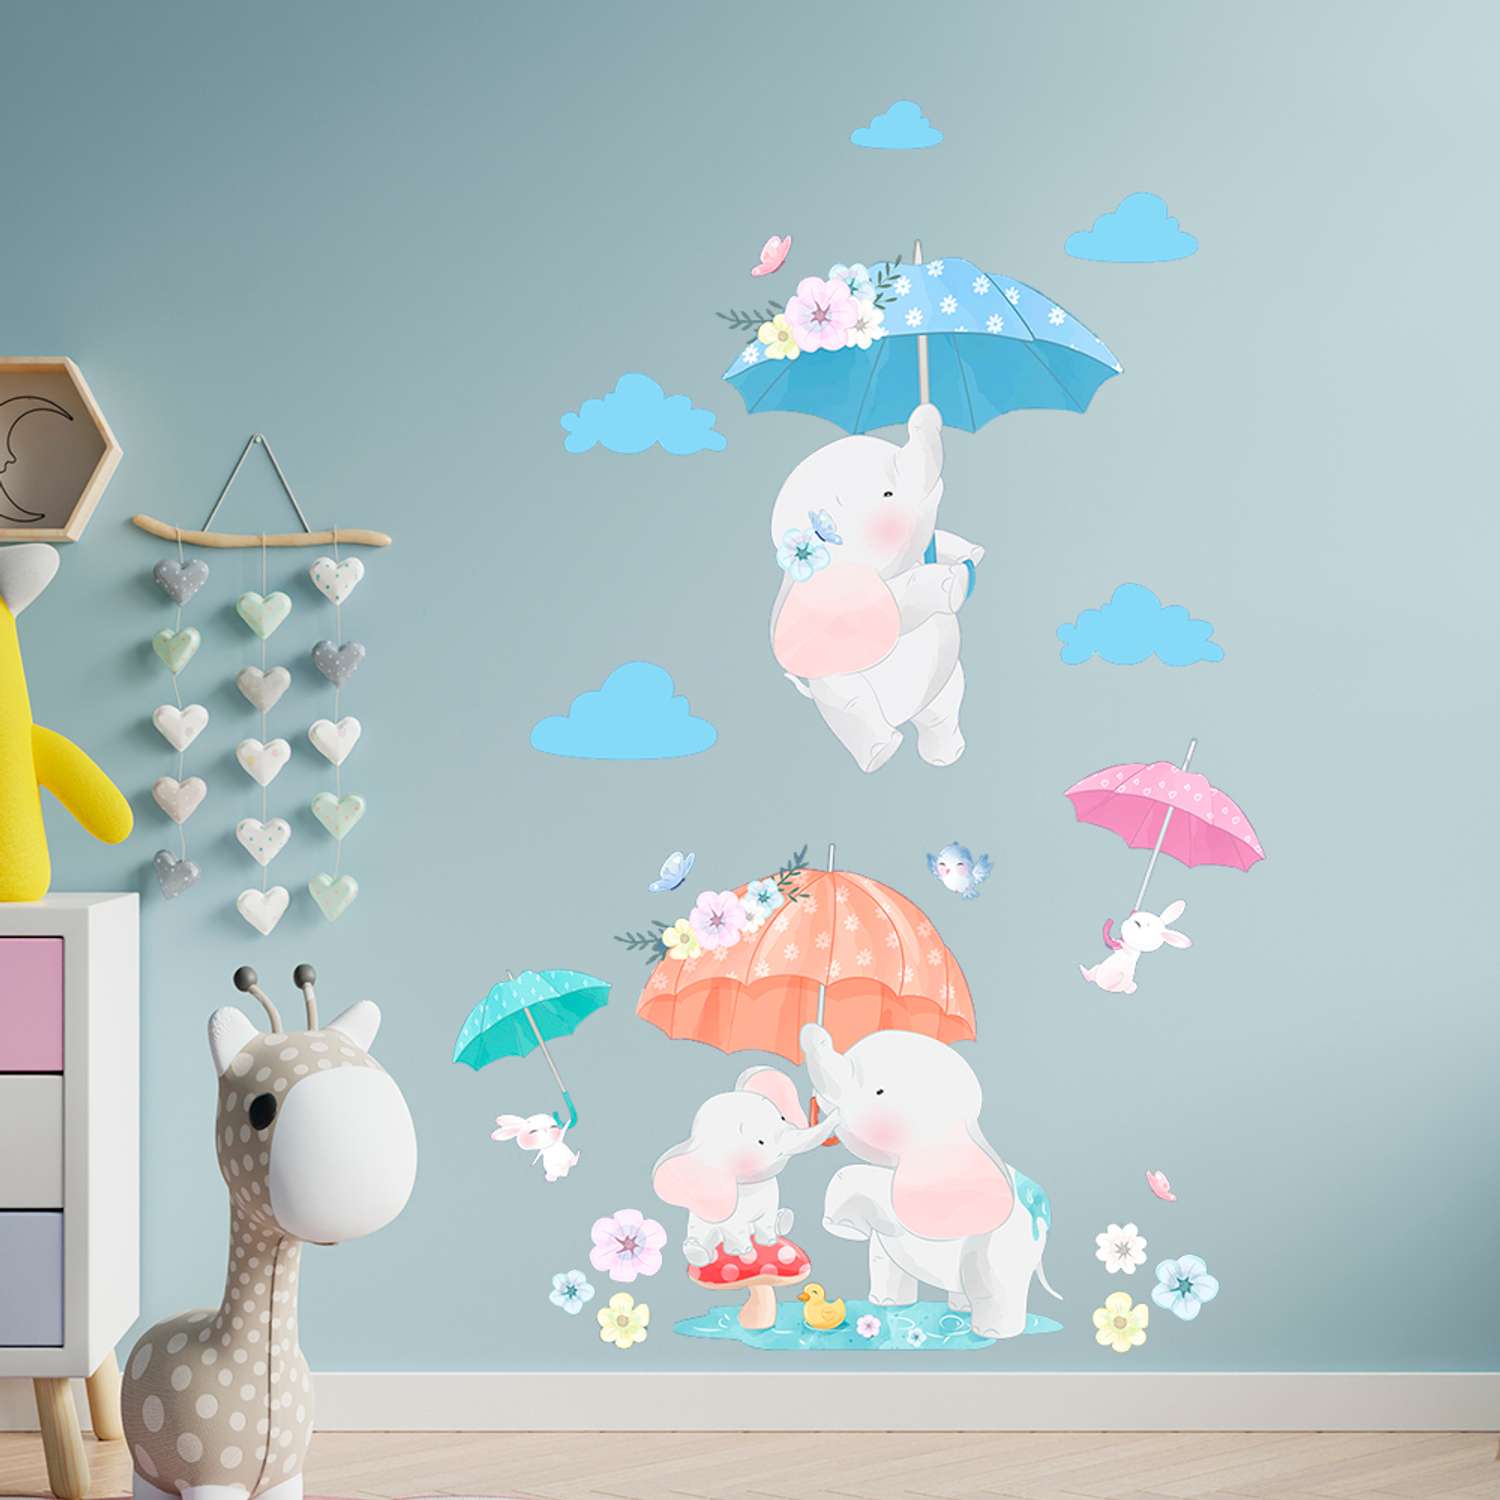 Интерьерная детская наклейка Woozzee Слонята для декора комнаты мебели и стен - фото 4